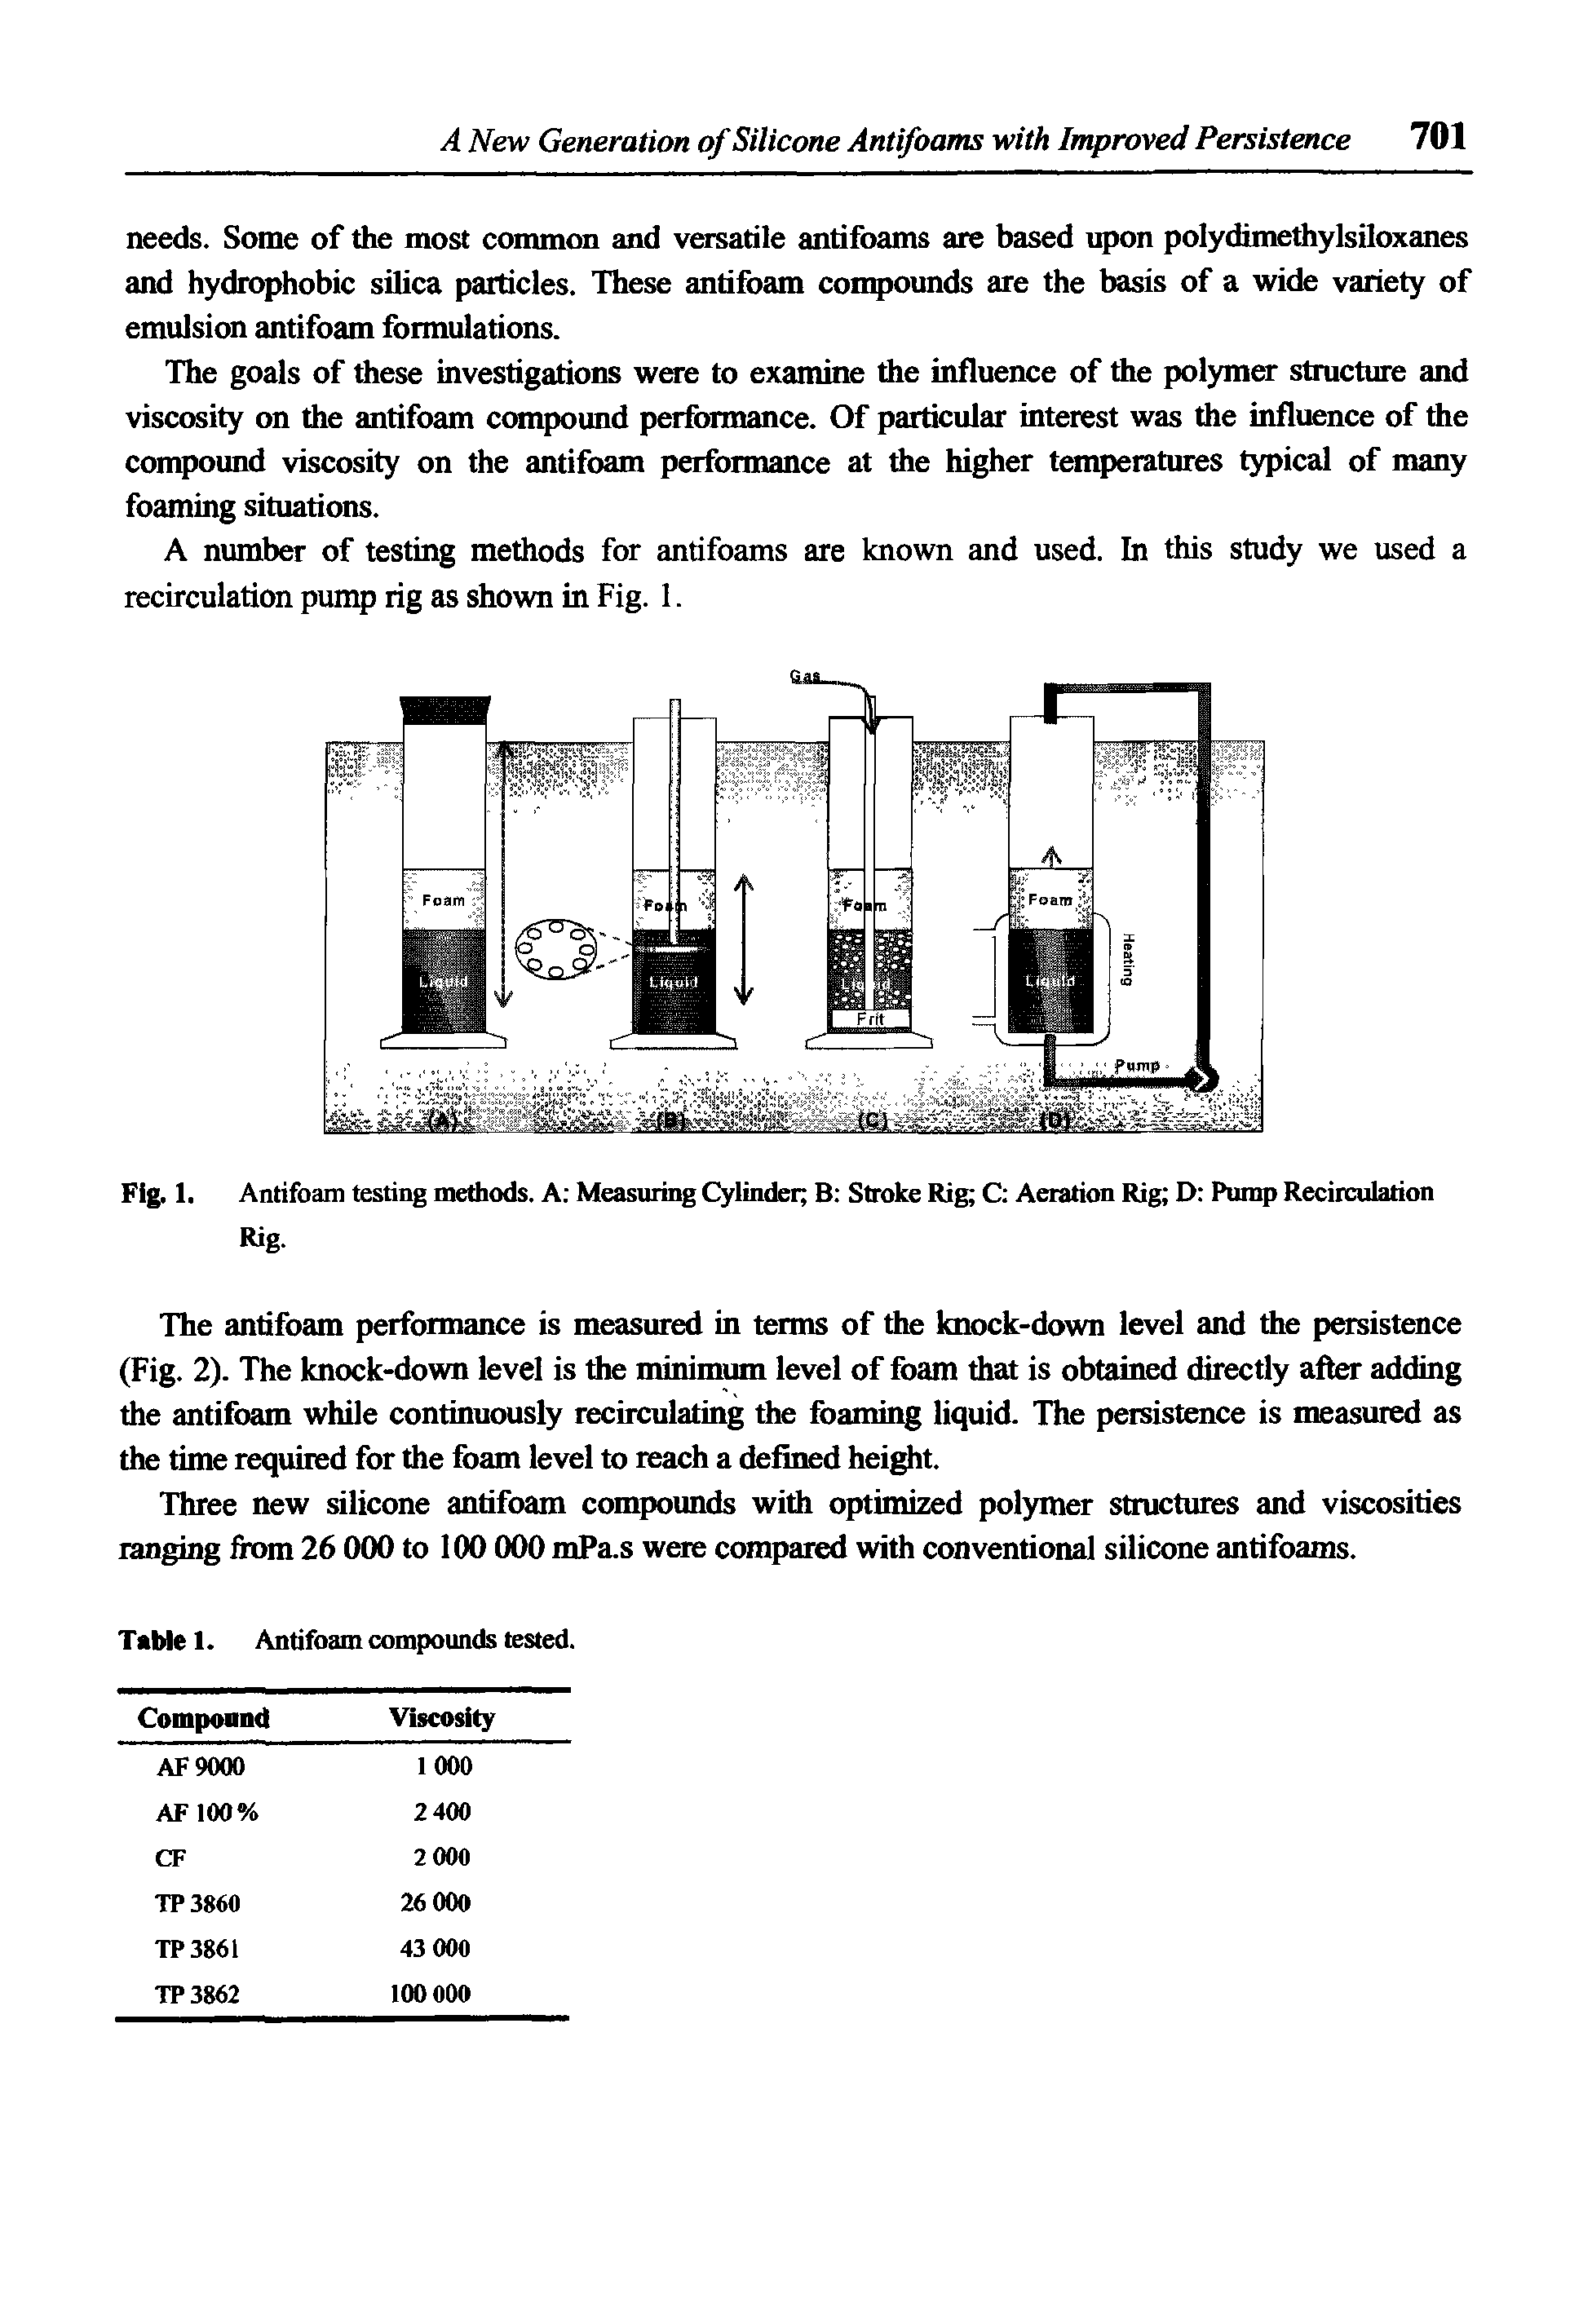 Fig. 1, Antifoam testing methods. A Measuring Cylinder B Stroke Rig C Aeration Rig D Pump Recirculation Rig.